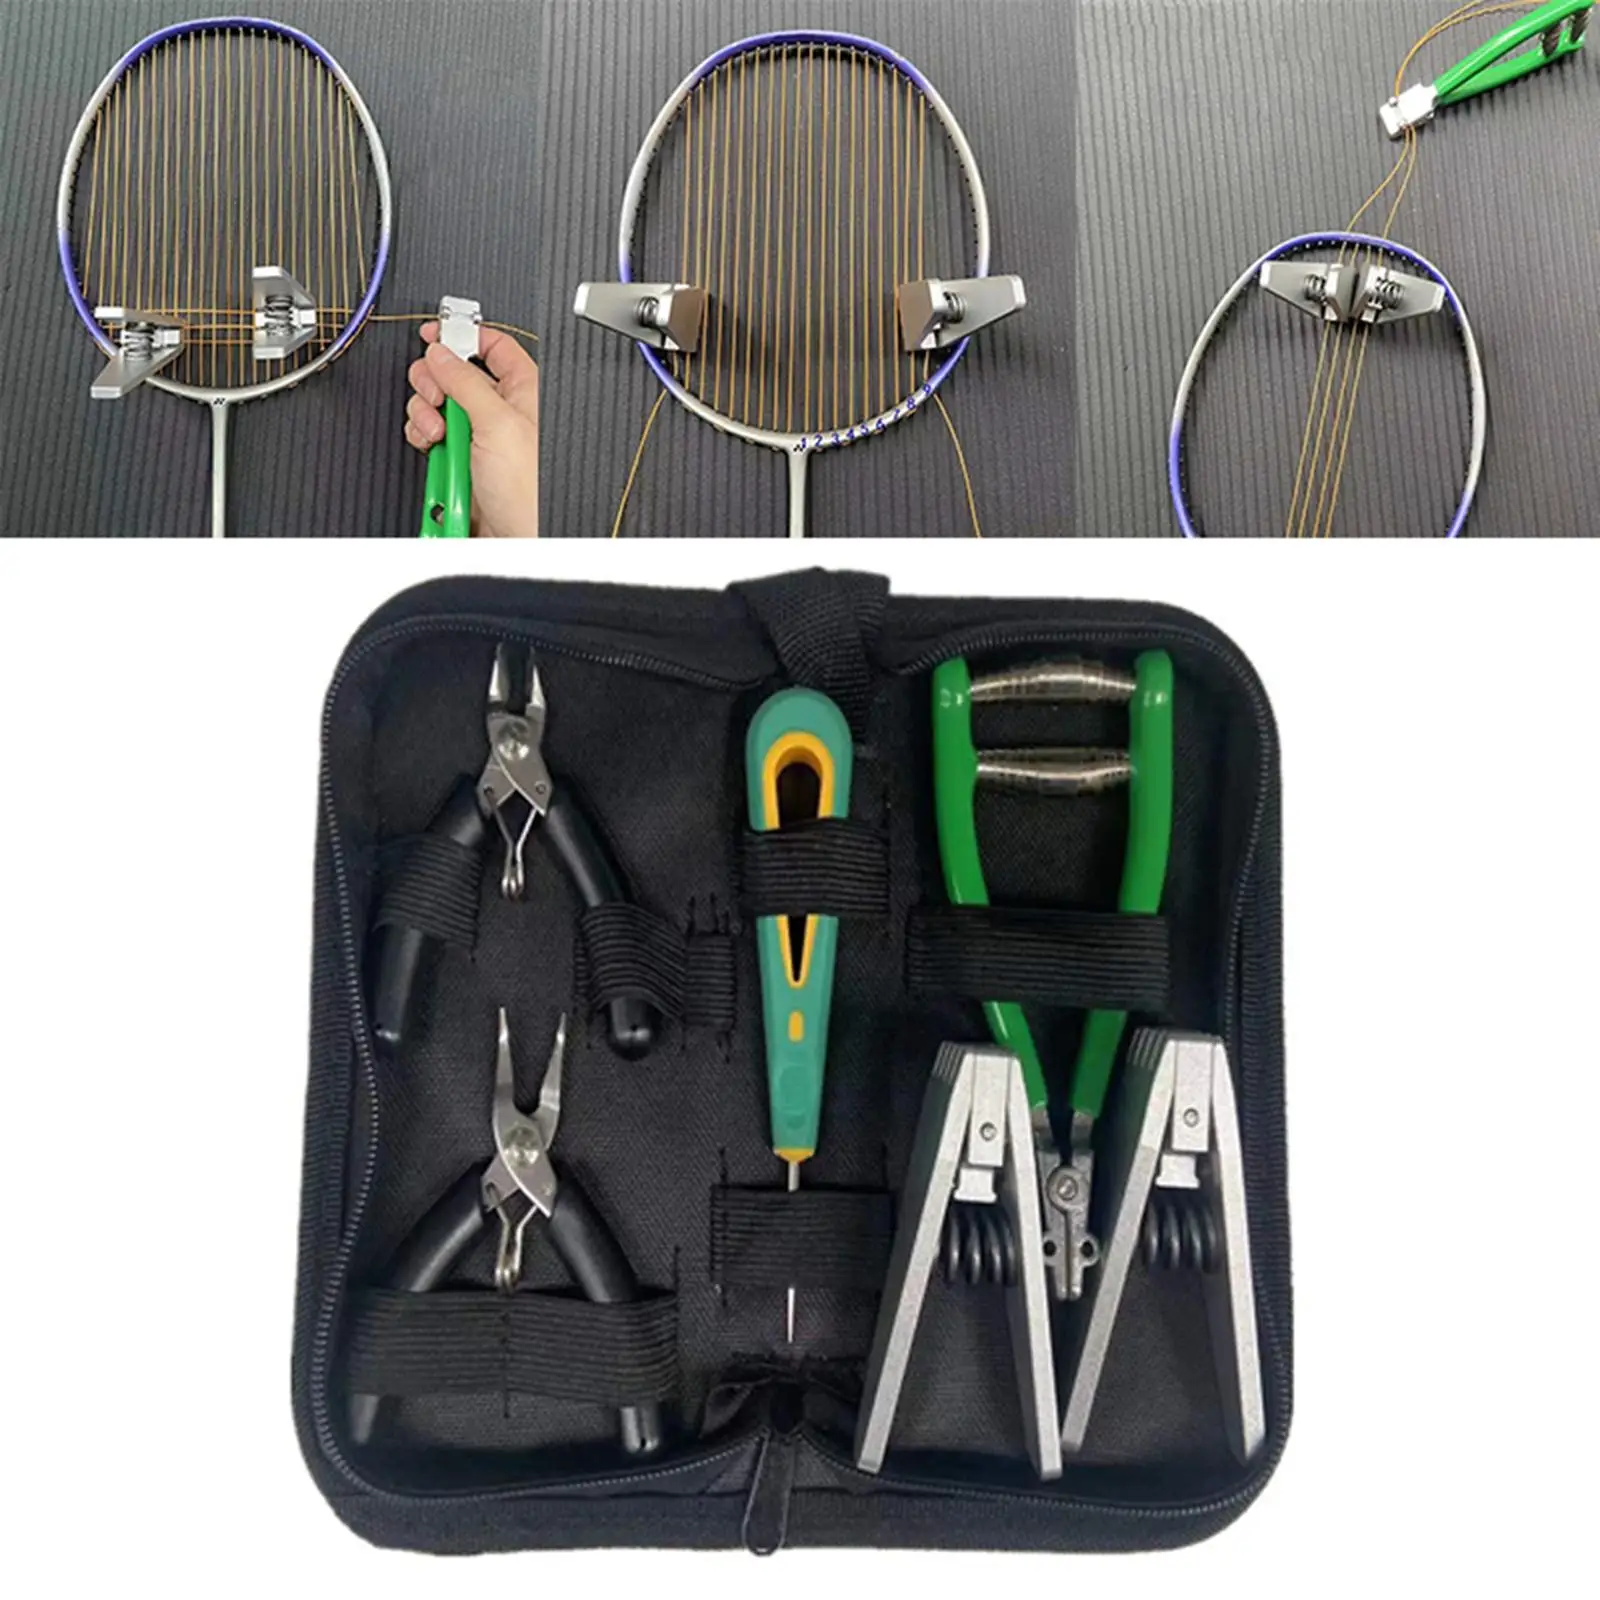 Starting Stringing Clamp Tool Kit Badminton Squash Tennis Racket Storage Bag